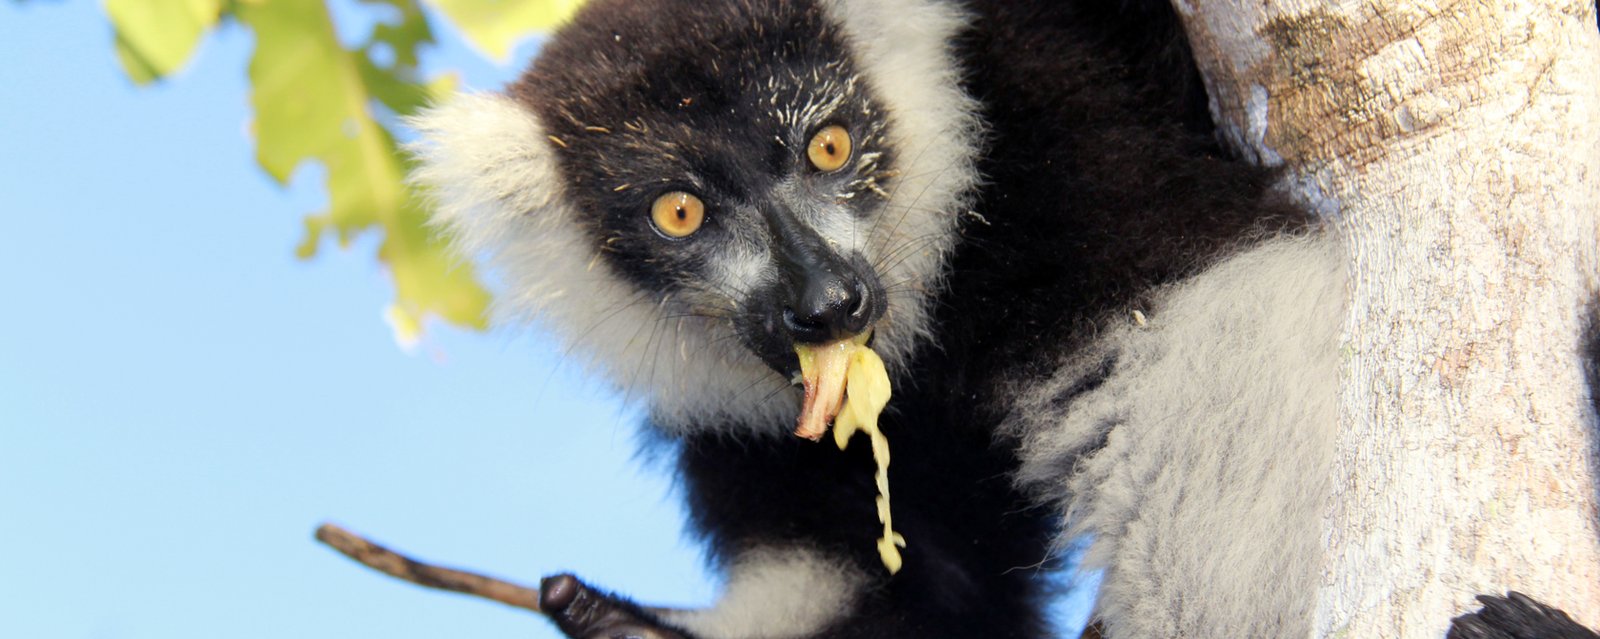 Lemure als Symbol für seinen Lebensraum – den primäre Küsten-Urwald, den wir schützen wollen